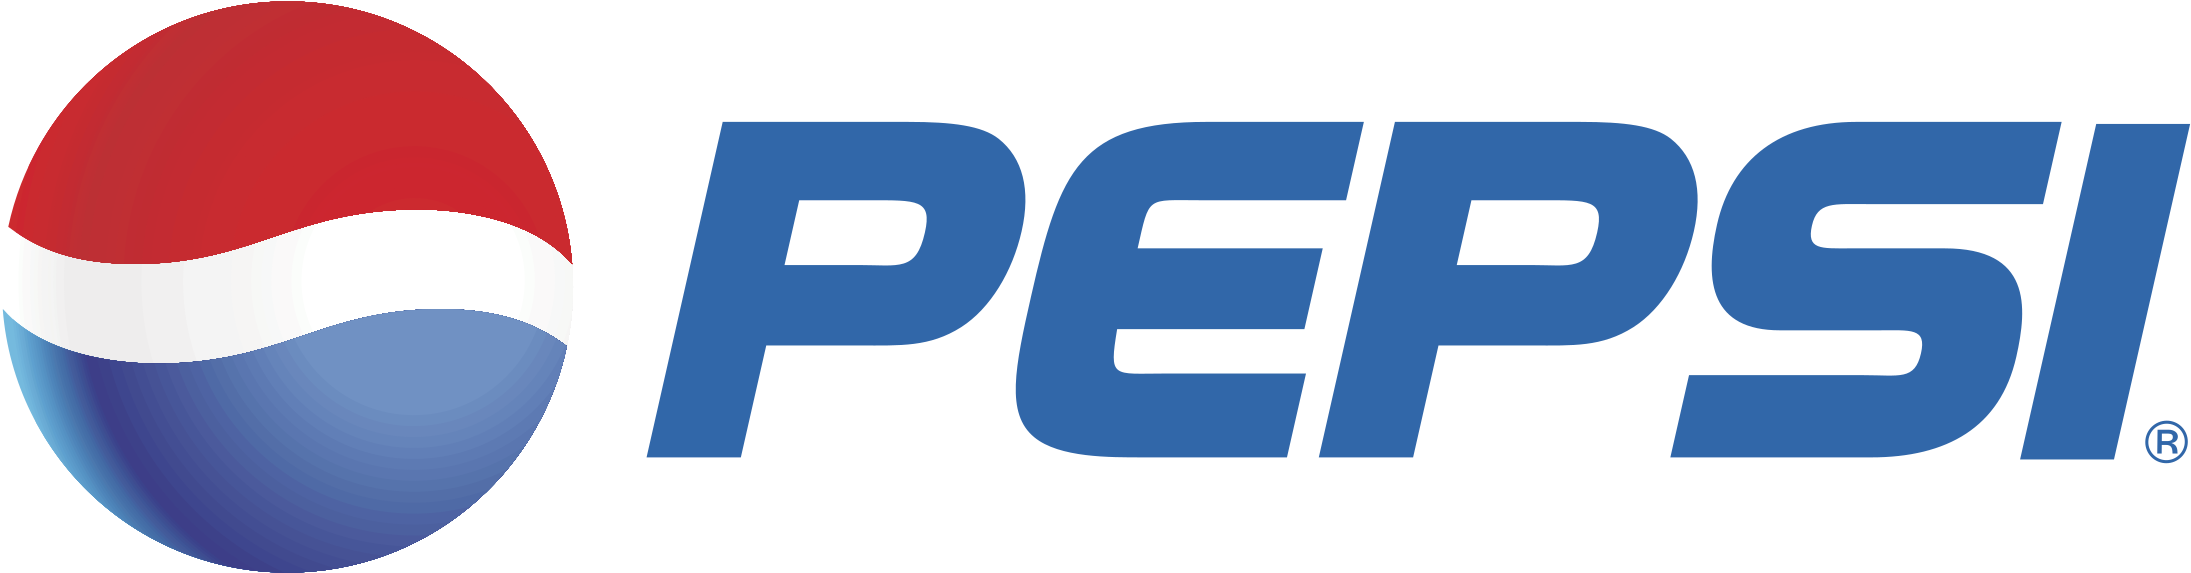 Pepsi Logo PNG Free File Download